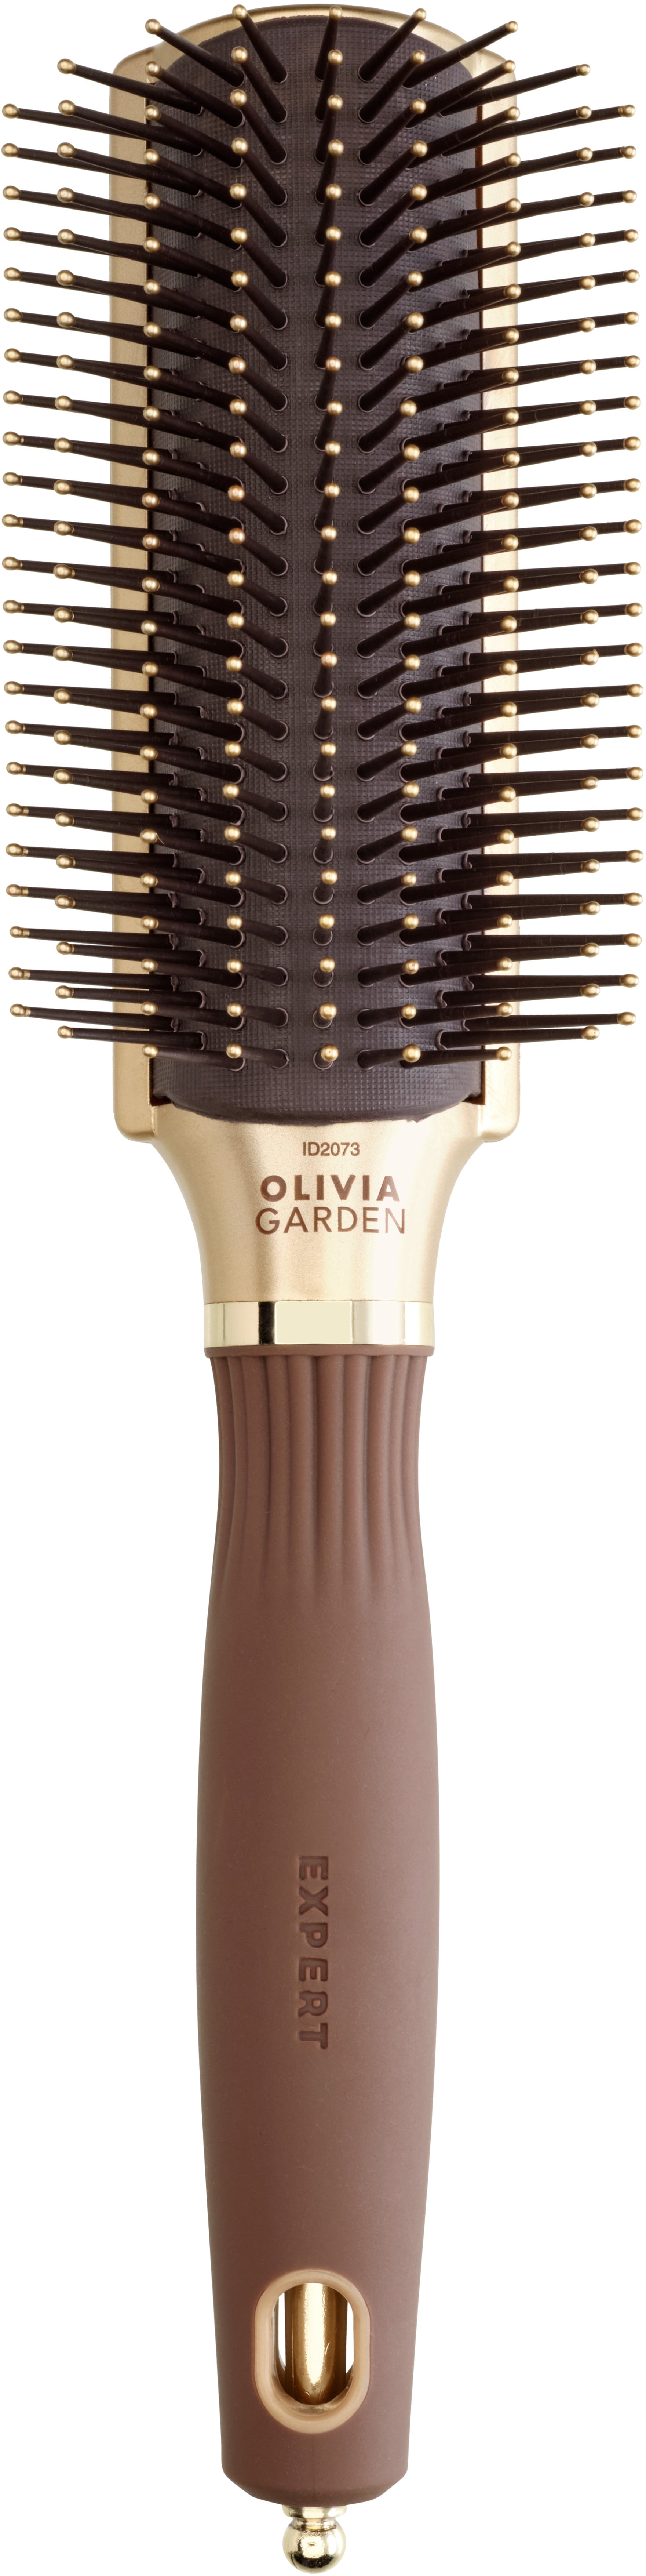 Produktbild von Olivia Garden - EXPERT STYLE CONTROL Nylon Bristles Gold&Brown